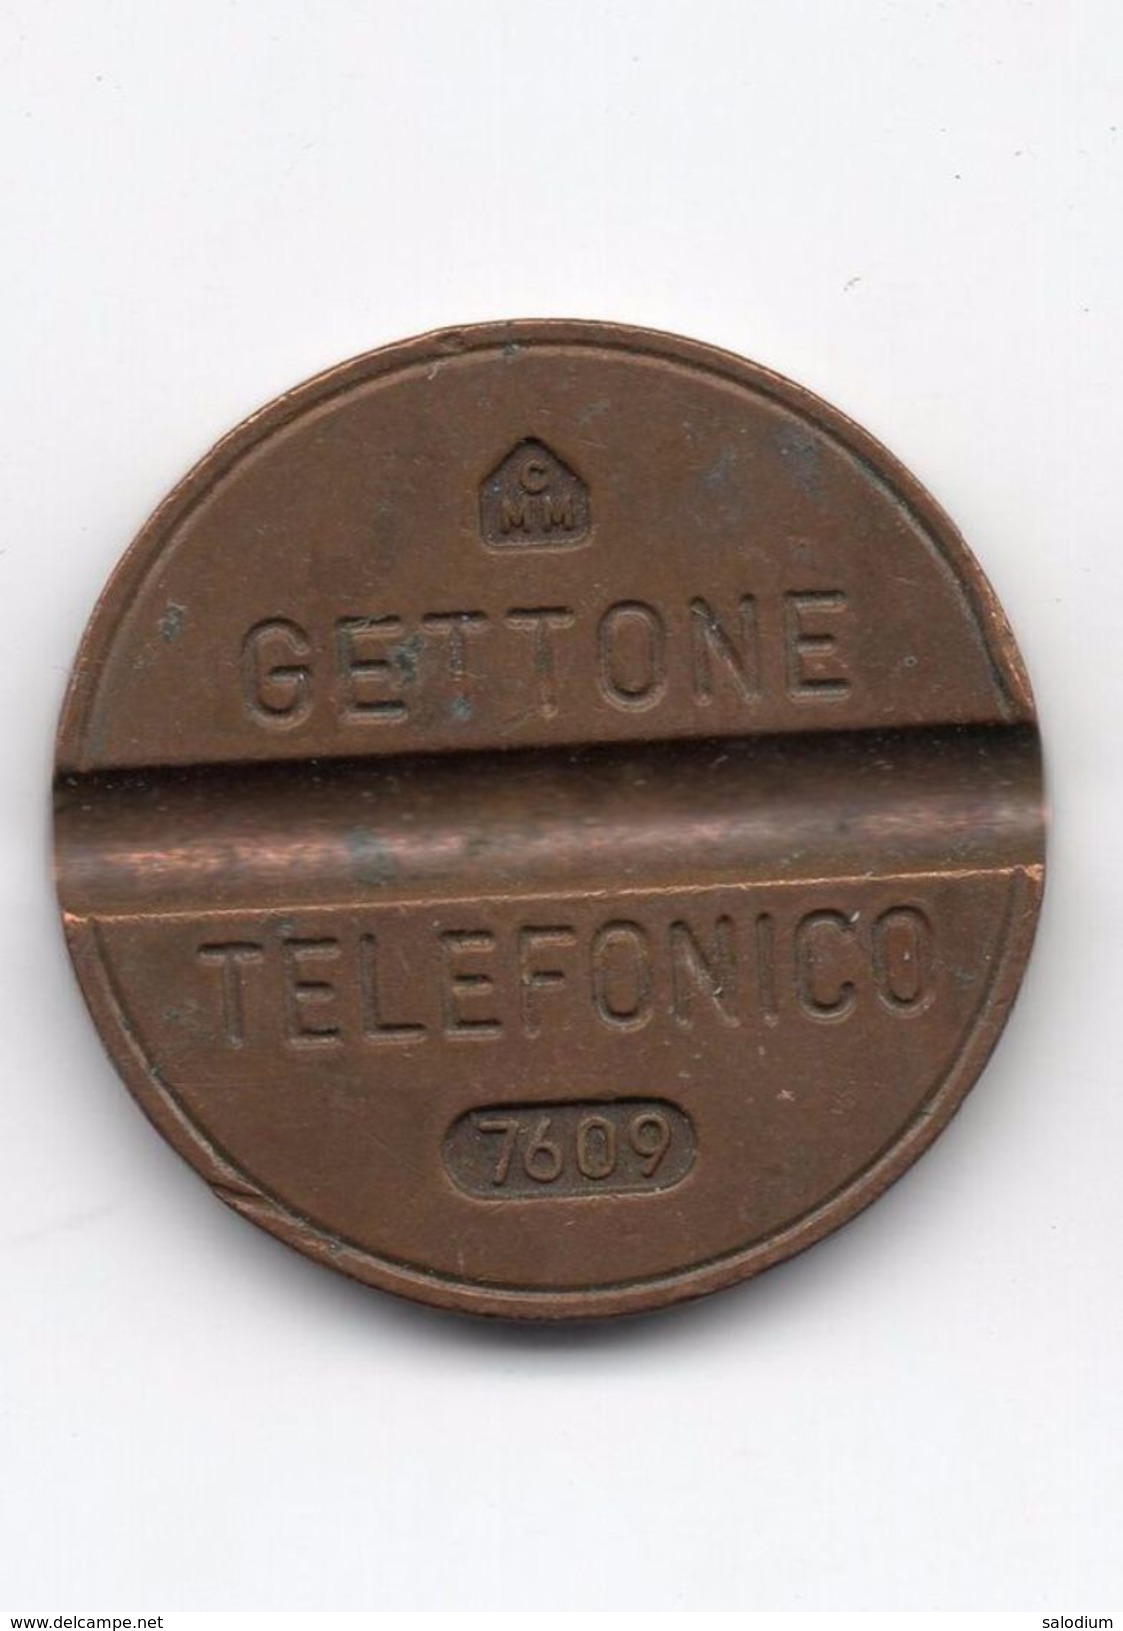 Gettone Telefonico 7609 Token Telephone - (Id-670) - Profesionales/De Sociedad